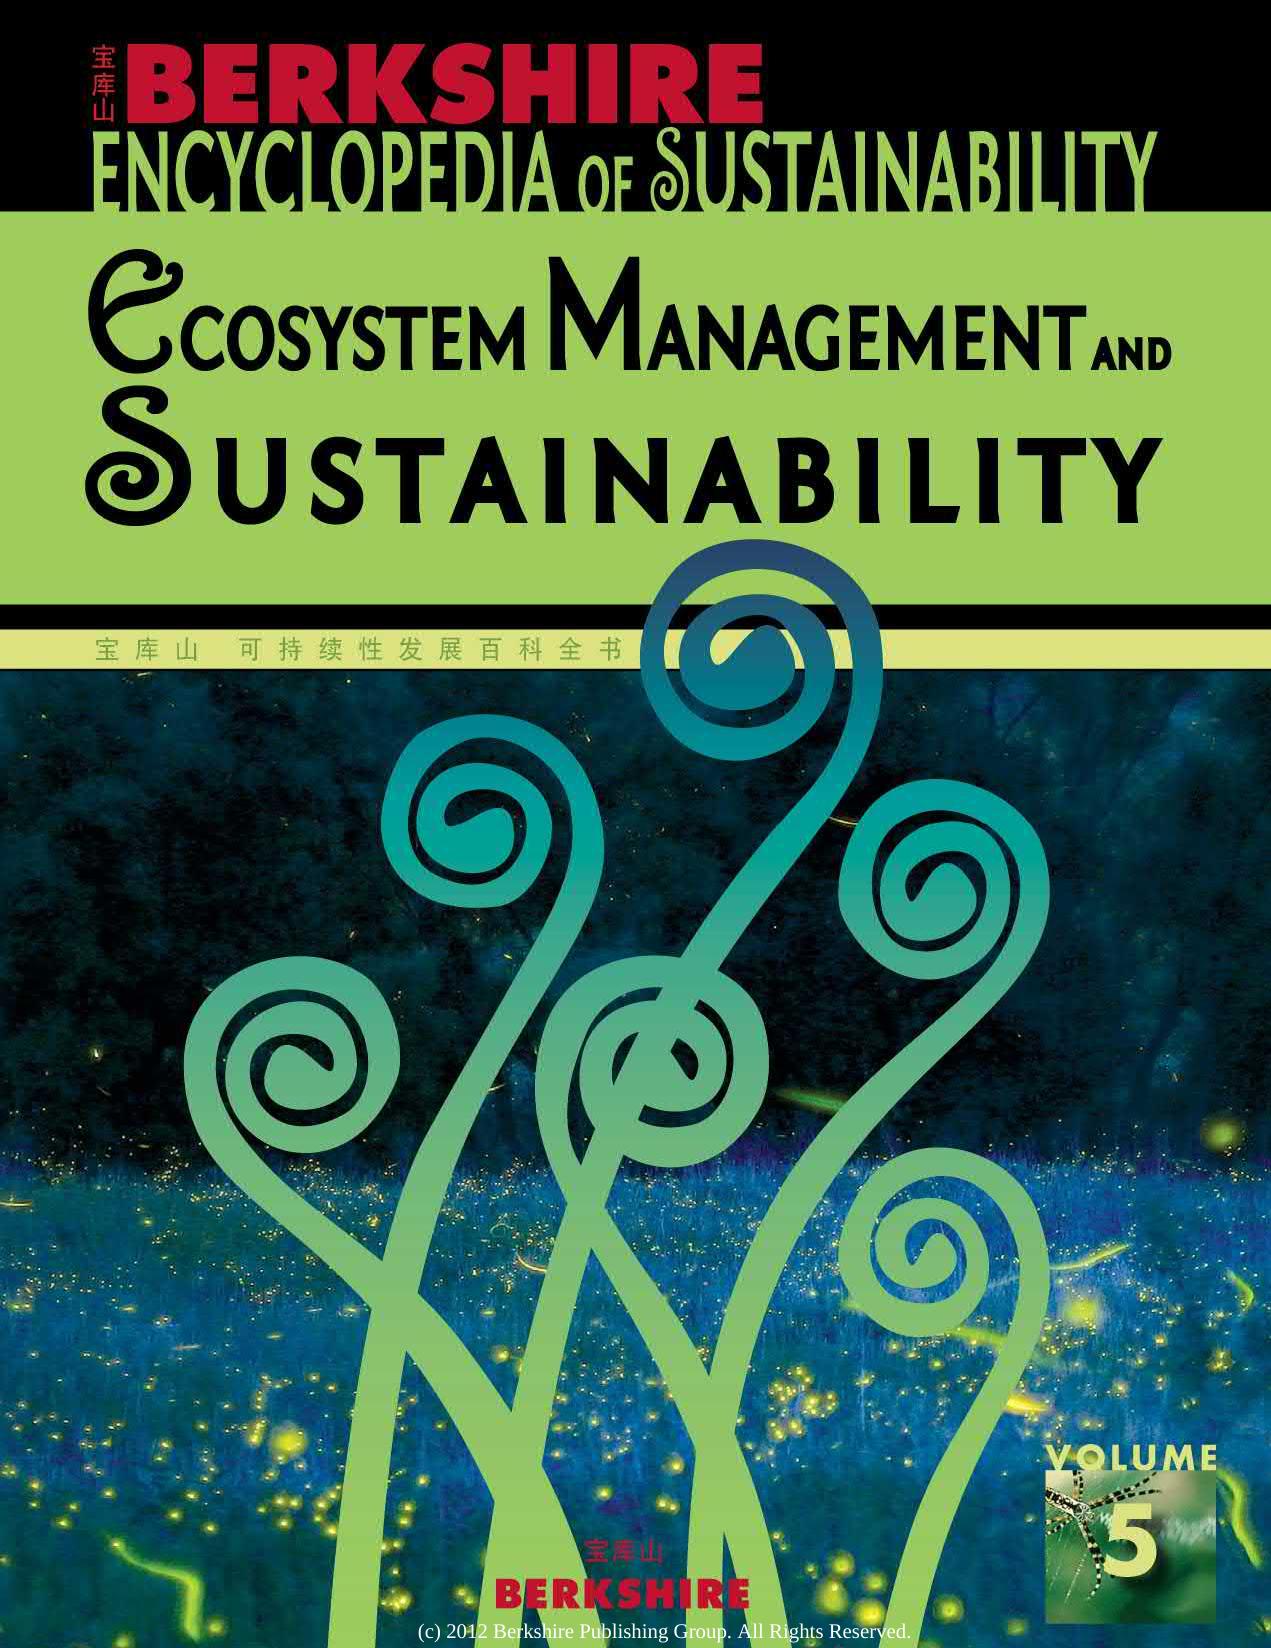 Berkshire Encyclopedia of Sustainability 5/10: Ecosystem Management and Sustainability